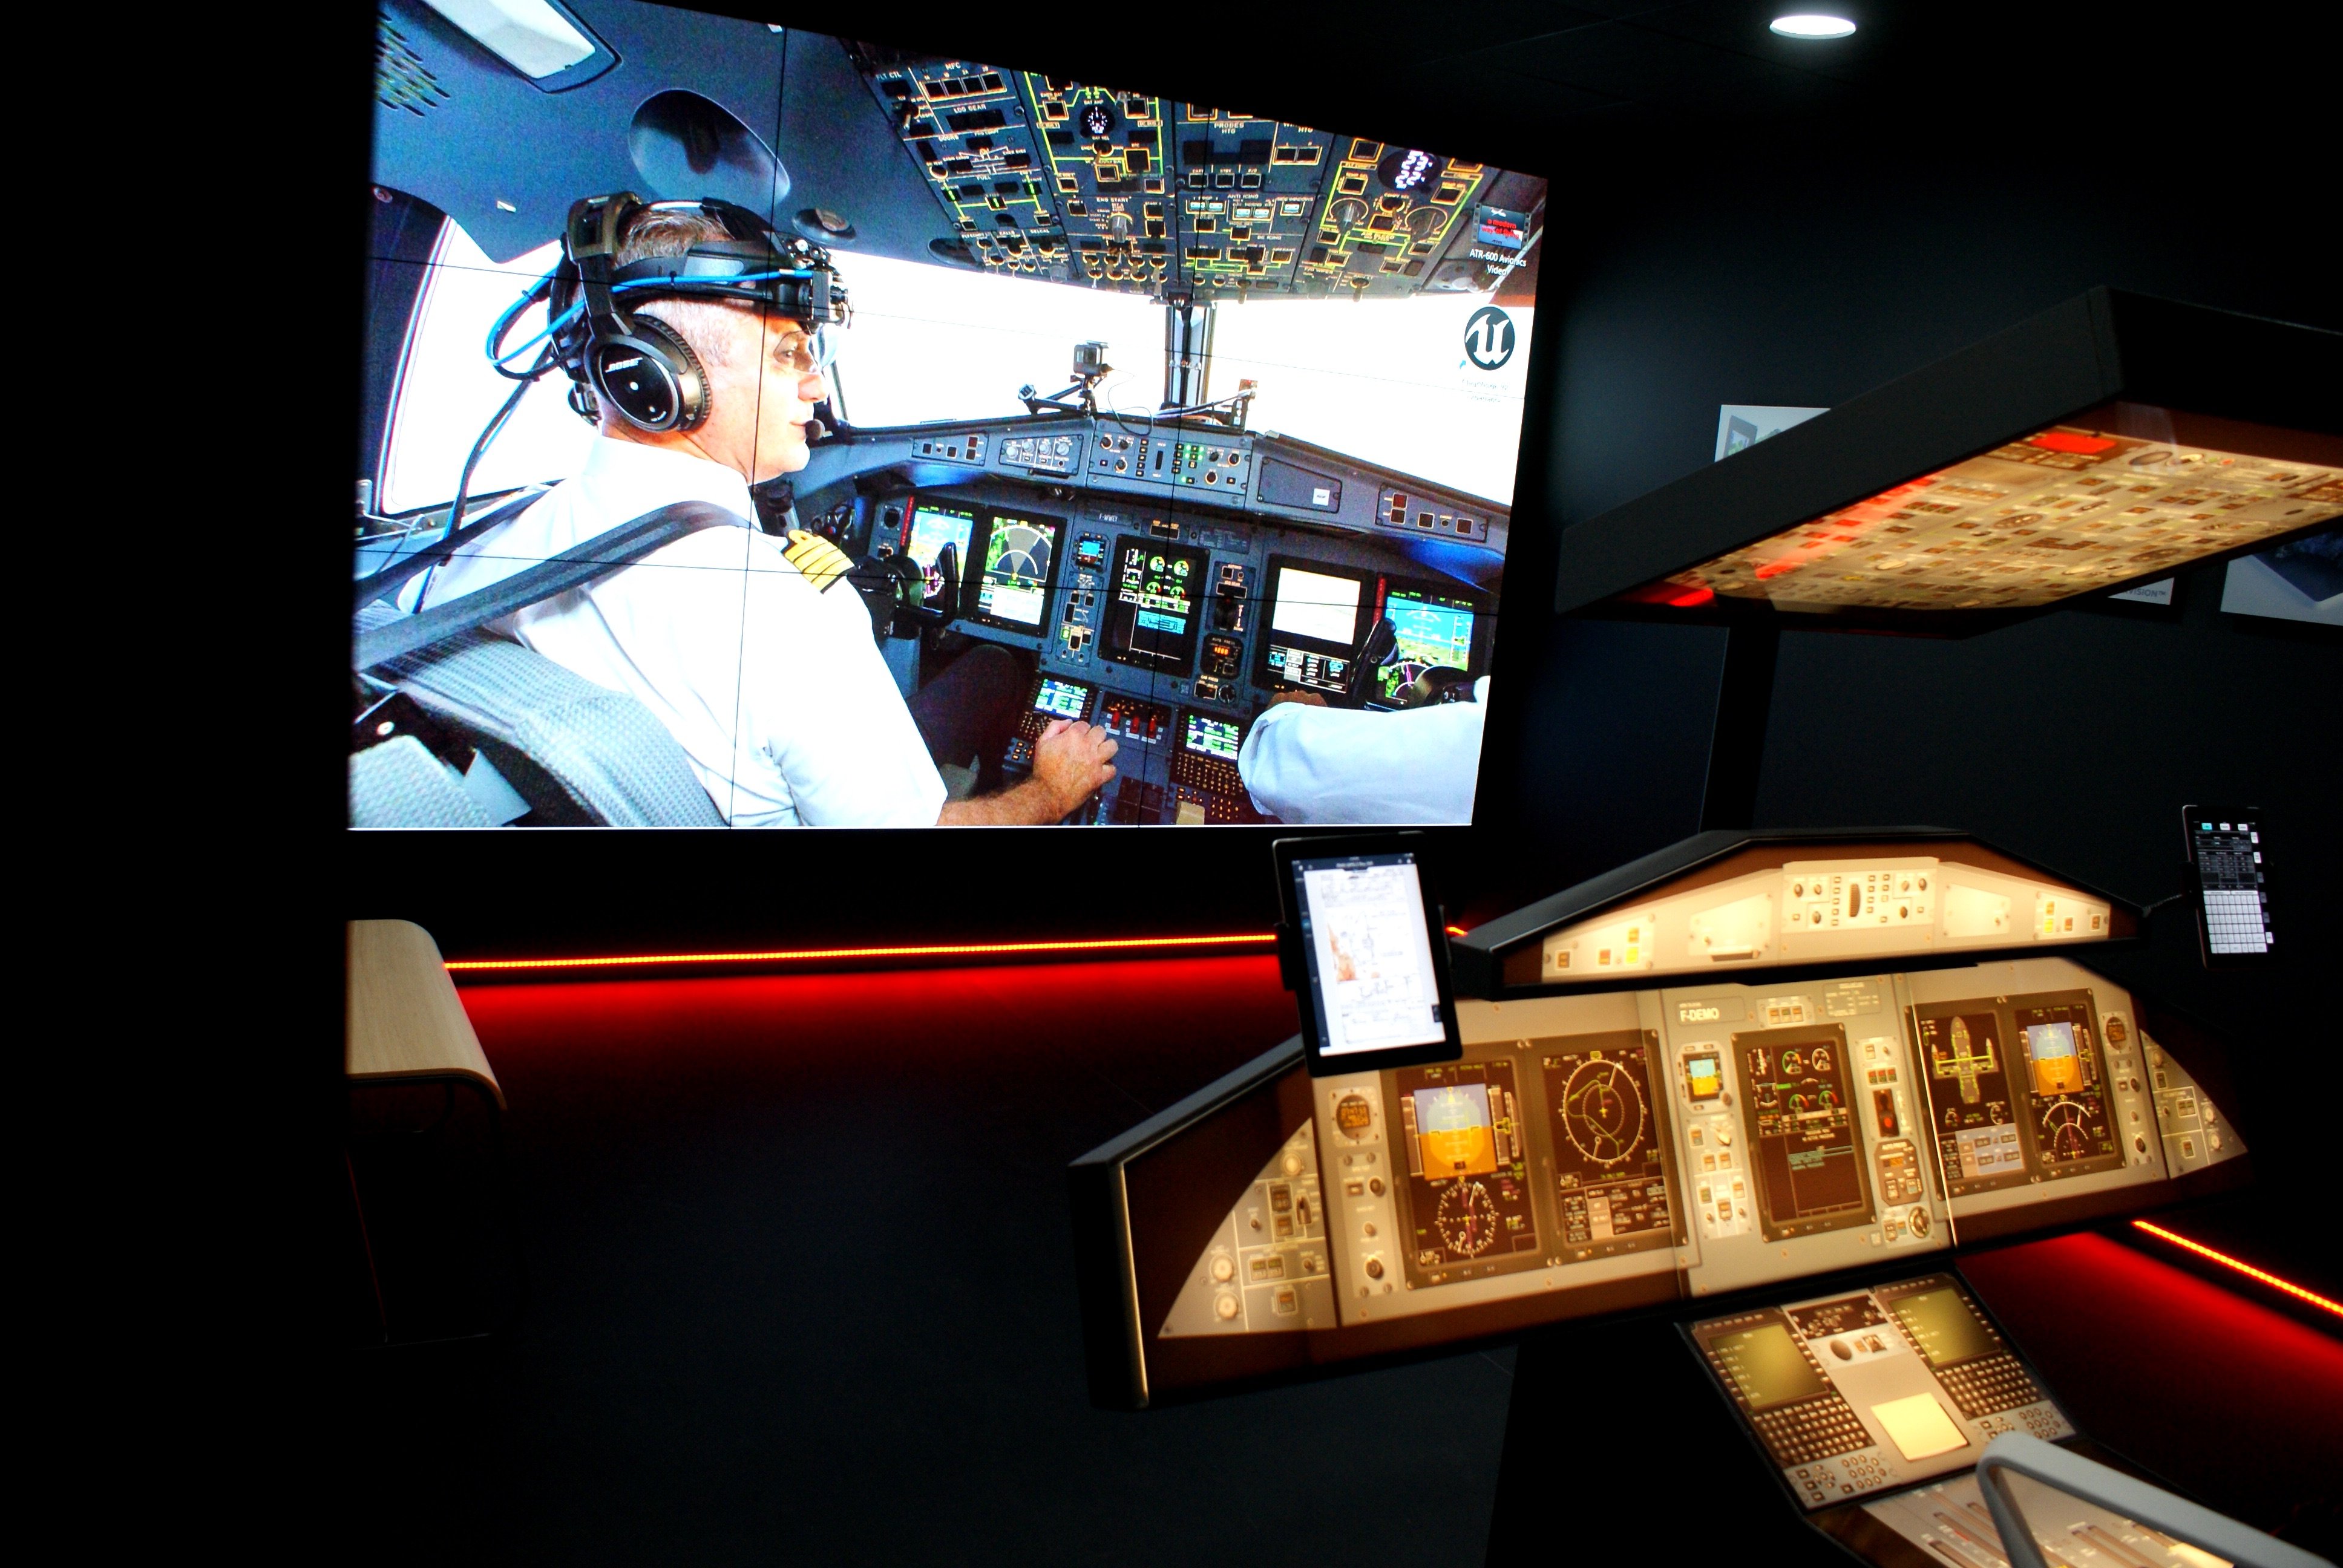 Le cockpit équipé d'un casque de réalité virtuelle permet d'expérimenter les dernières innovations d'aides au pilotage. LP/Paul Périé